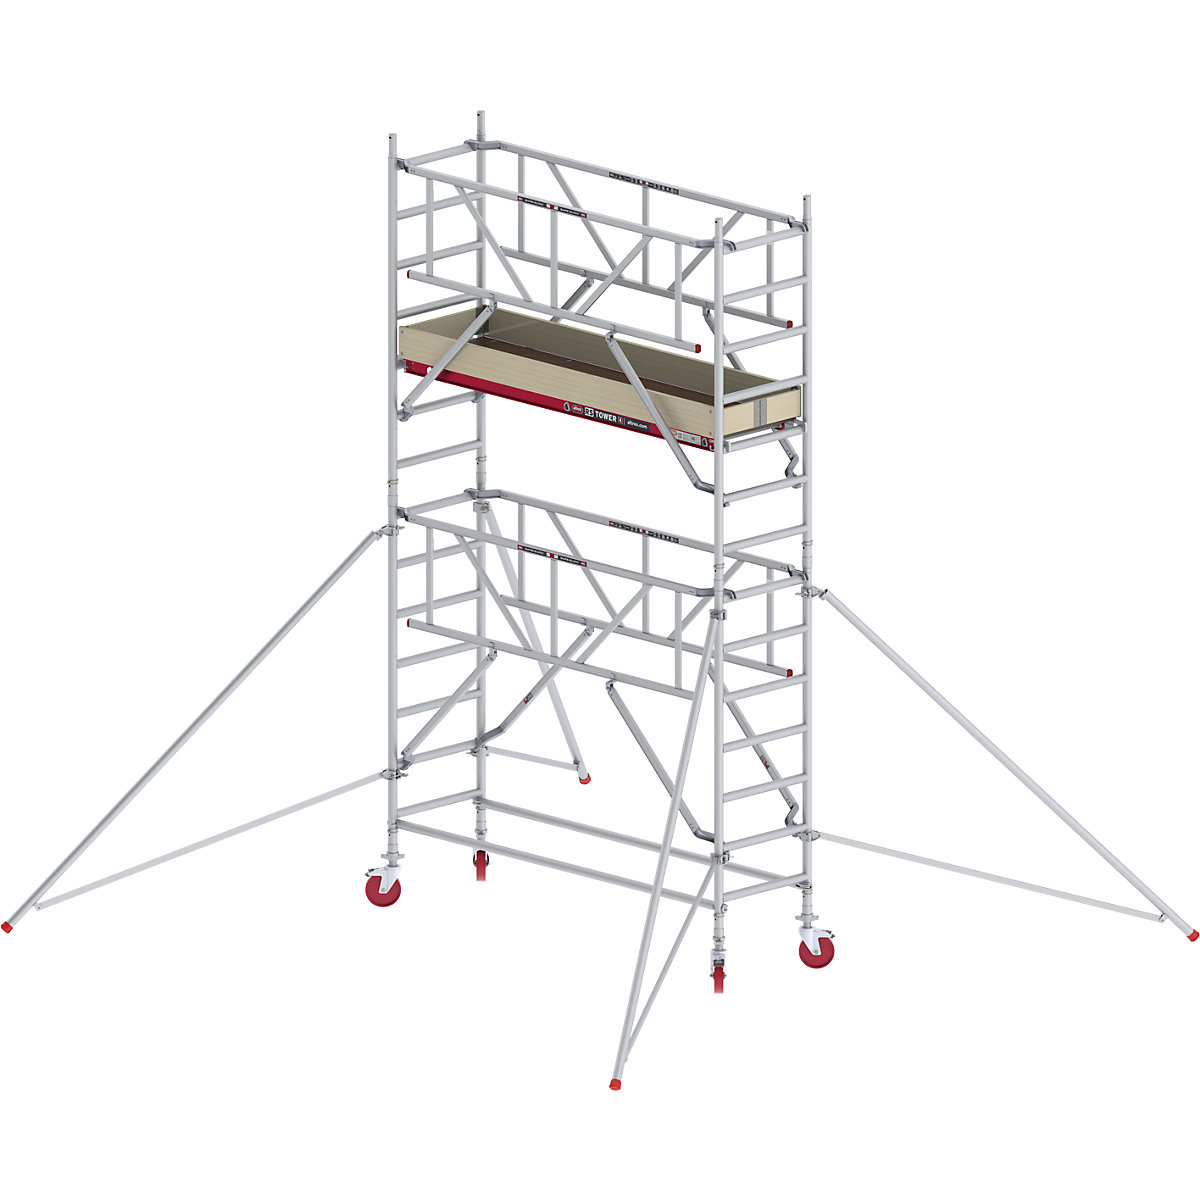 Úzké pojízdné lešení RS TOWER 41 s technologií Safe-Quick® – Altrex, dřevěná plošina, délka 1,85 m, pracovní výška 5,20 m-4